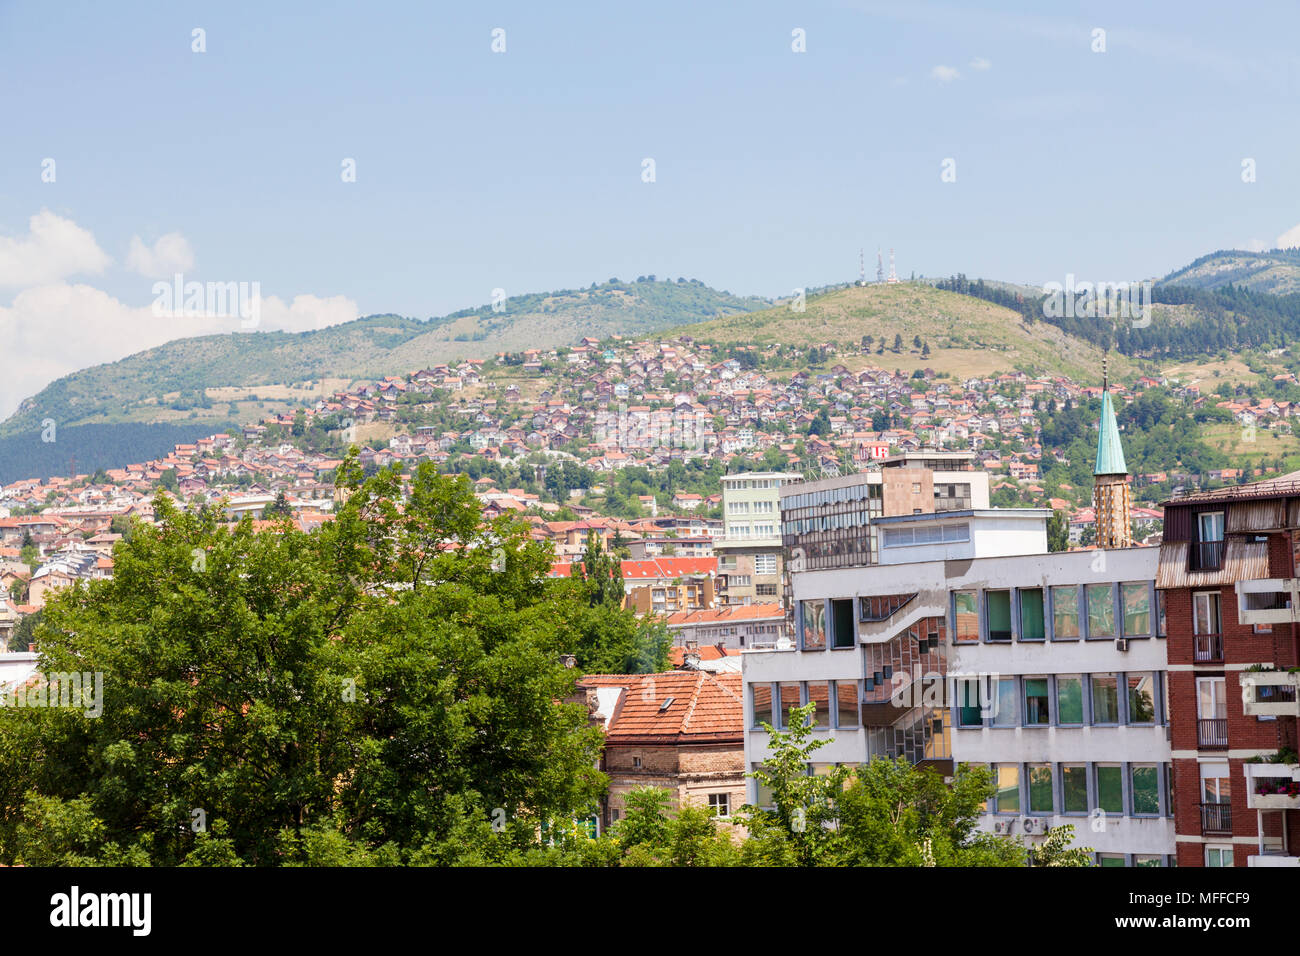 View over Sarajevo, Bosnia and Herzegovina Stock Photo